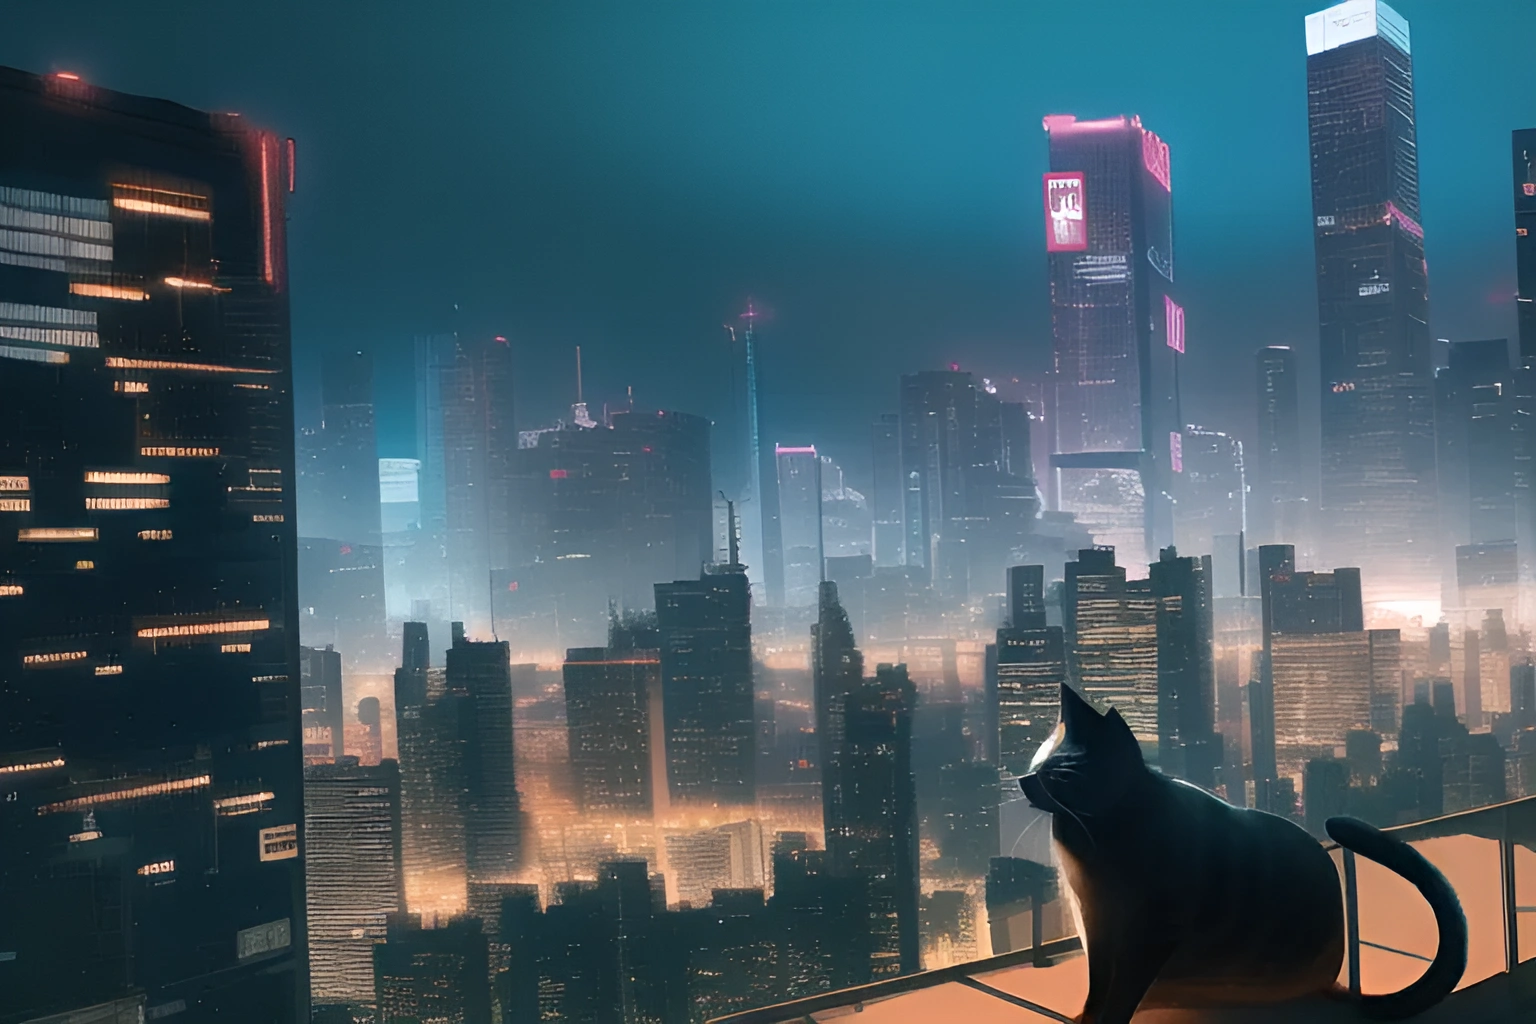 Feline Cyberpunk City Cityscape Neon Skyscraper Artwork Animals Cats Wallpaper:1536x1024